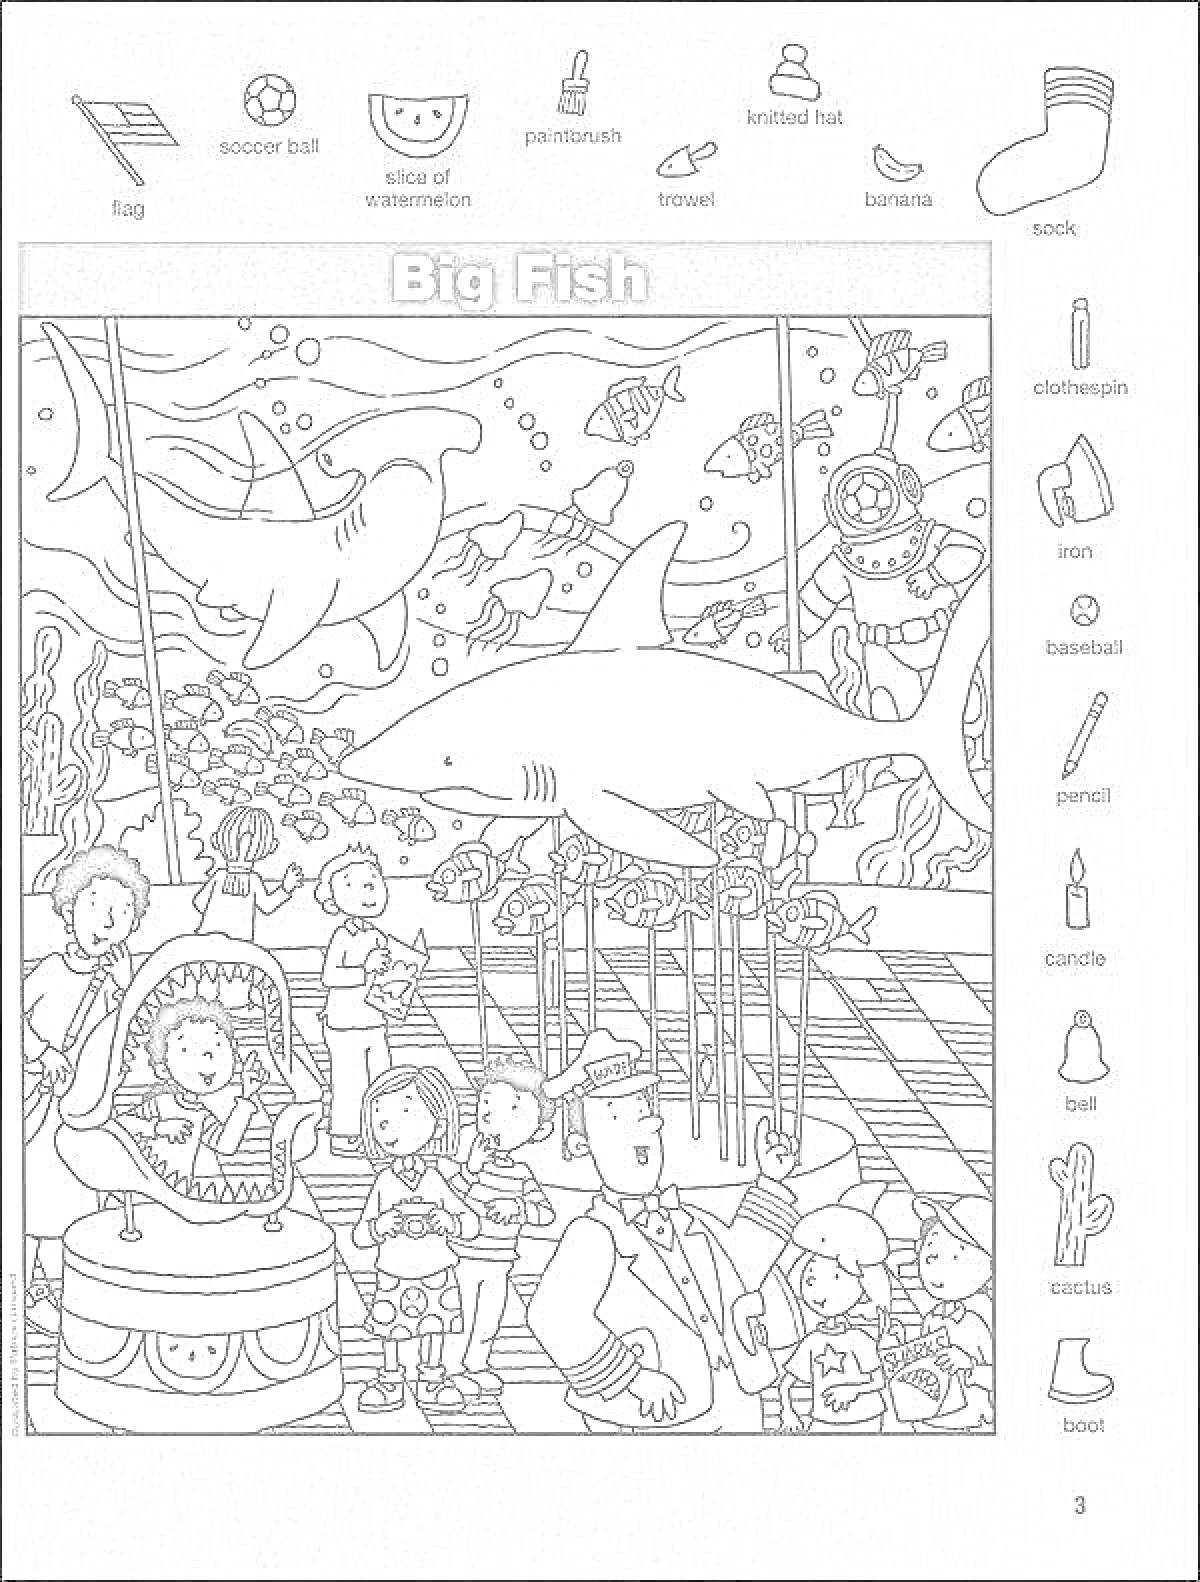 РаскраскаBig Fish - мяч, ломтик арбуза, медуза, выкидной нож, пирог, шоколадка, бутылка, банан, акваланг, галстук-бабочка, ножницы, лампочка, печенье, свеча, грабли, лампа, ботинок